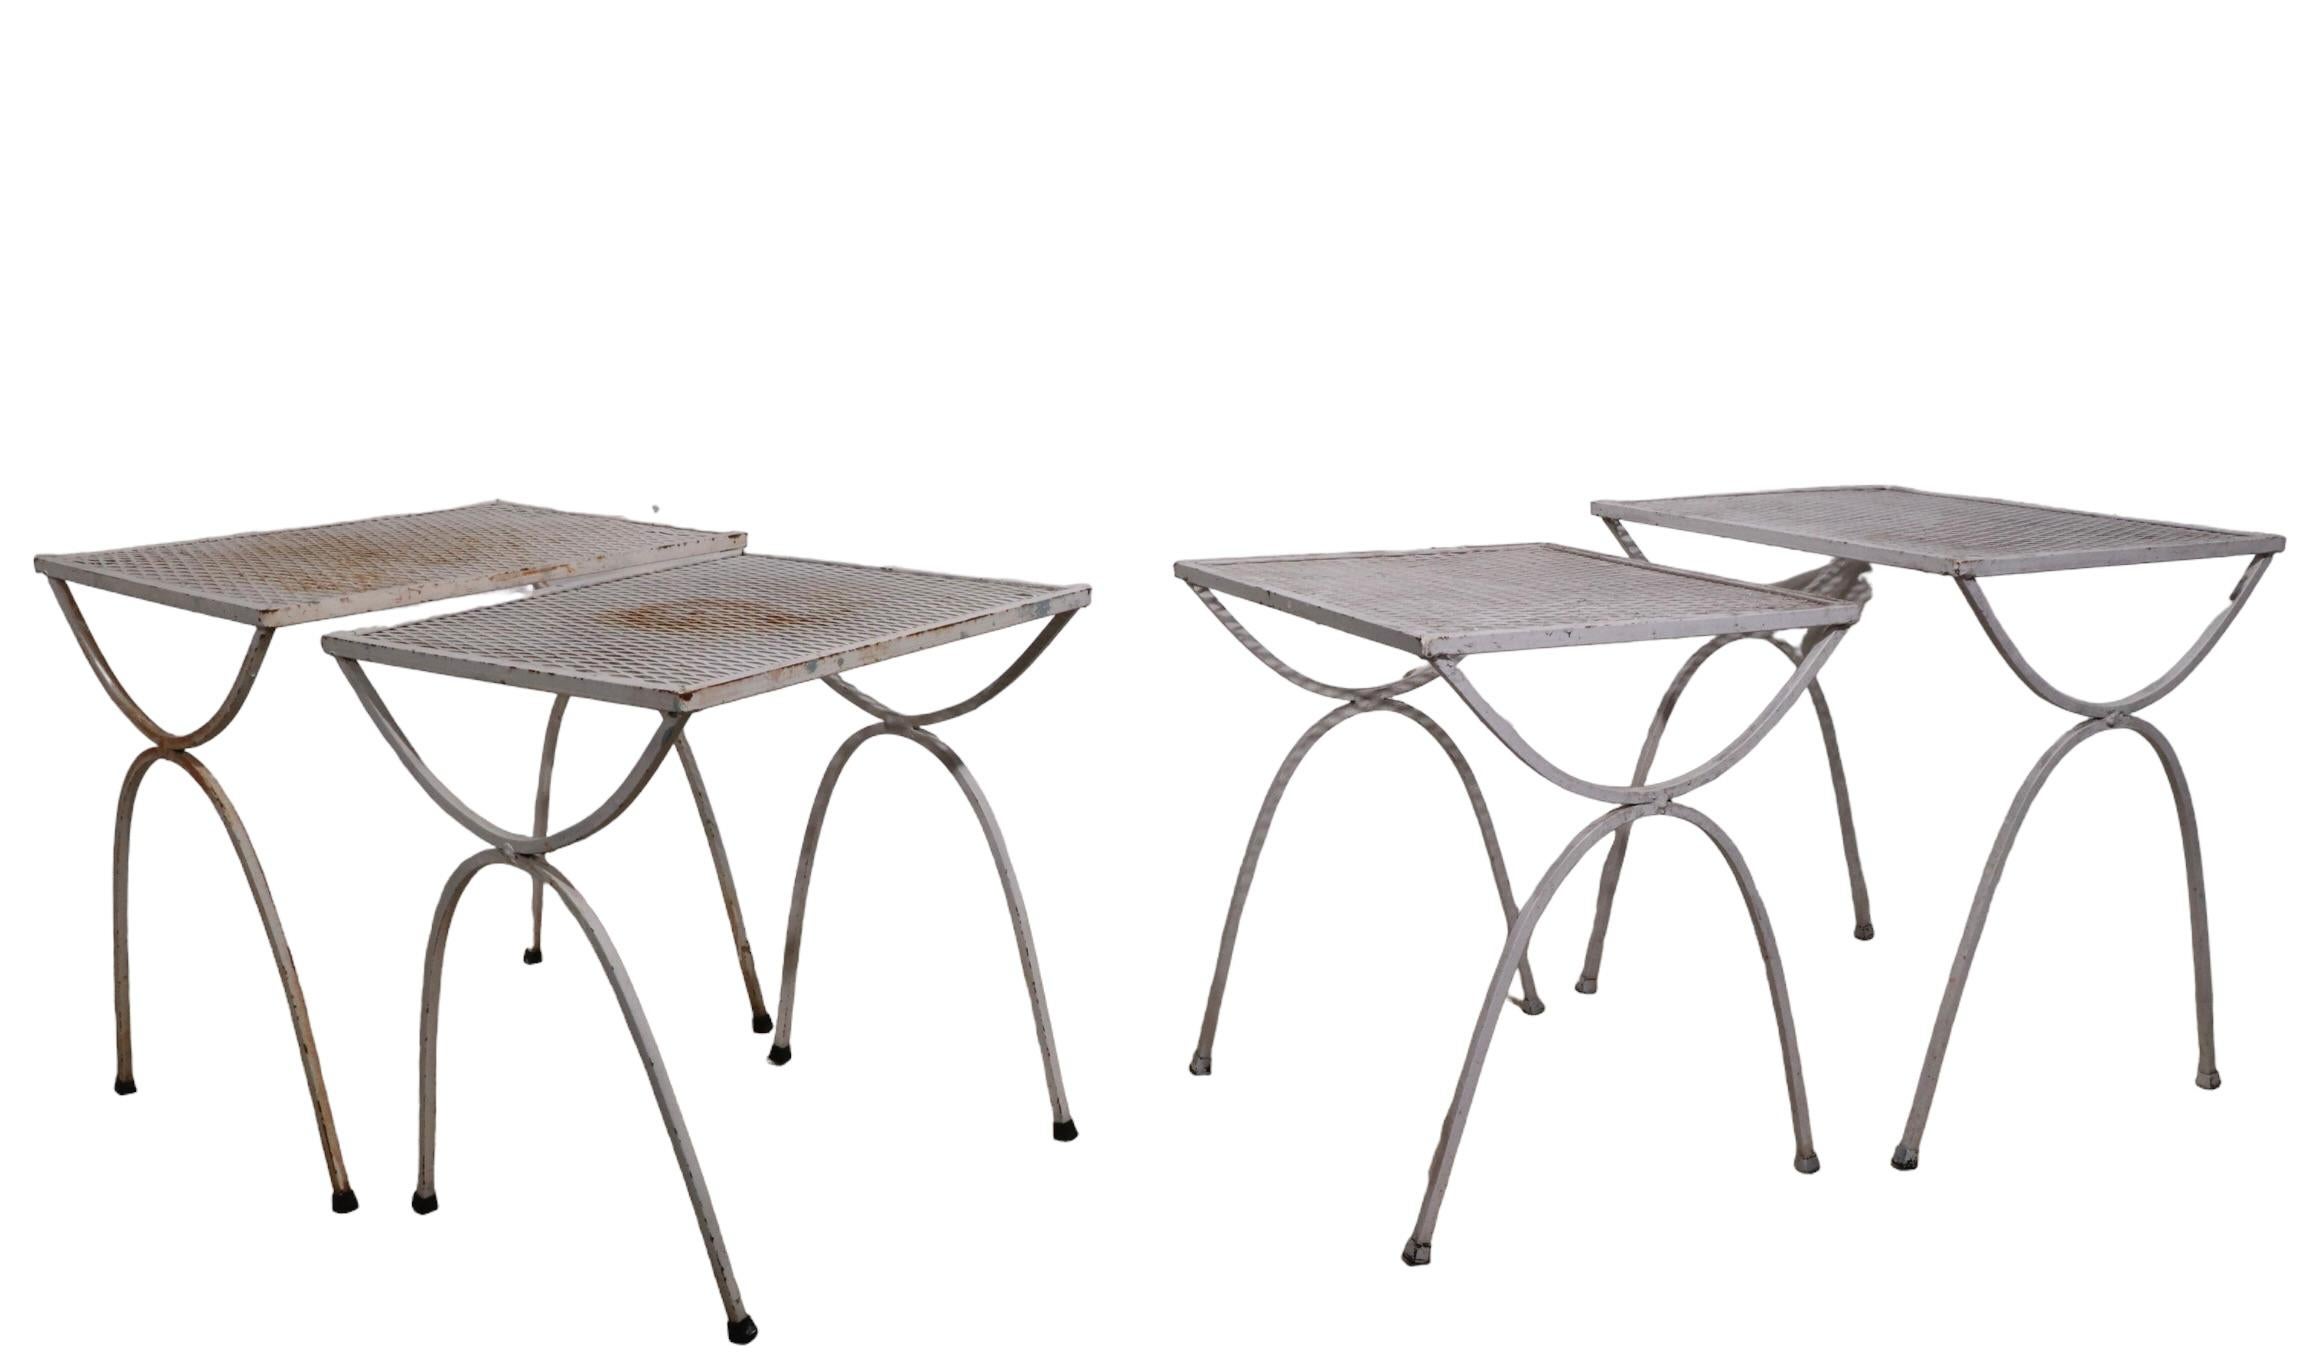 Ensemble de deux tables gigognes à l'architecture chic par Salterini. Construites en fer forgé et en treillis métallique, ces tables conviennent aussi bien à un usage intérieur qu'extérieur. Leur structure est saine et robuste, elles présentent